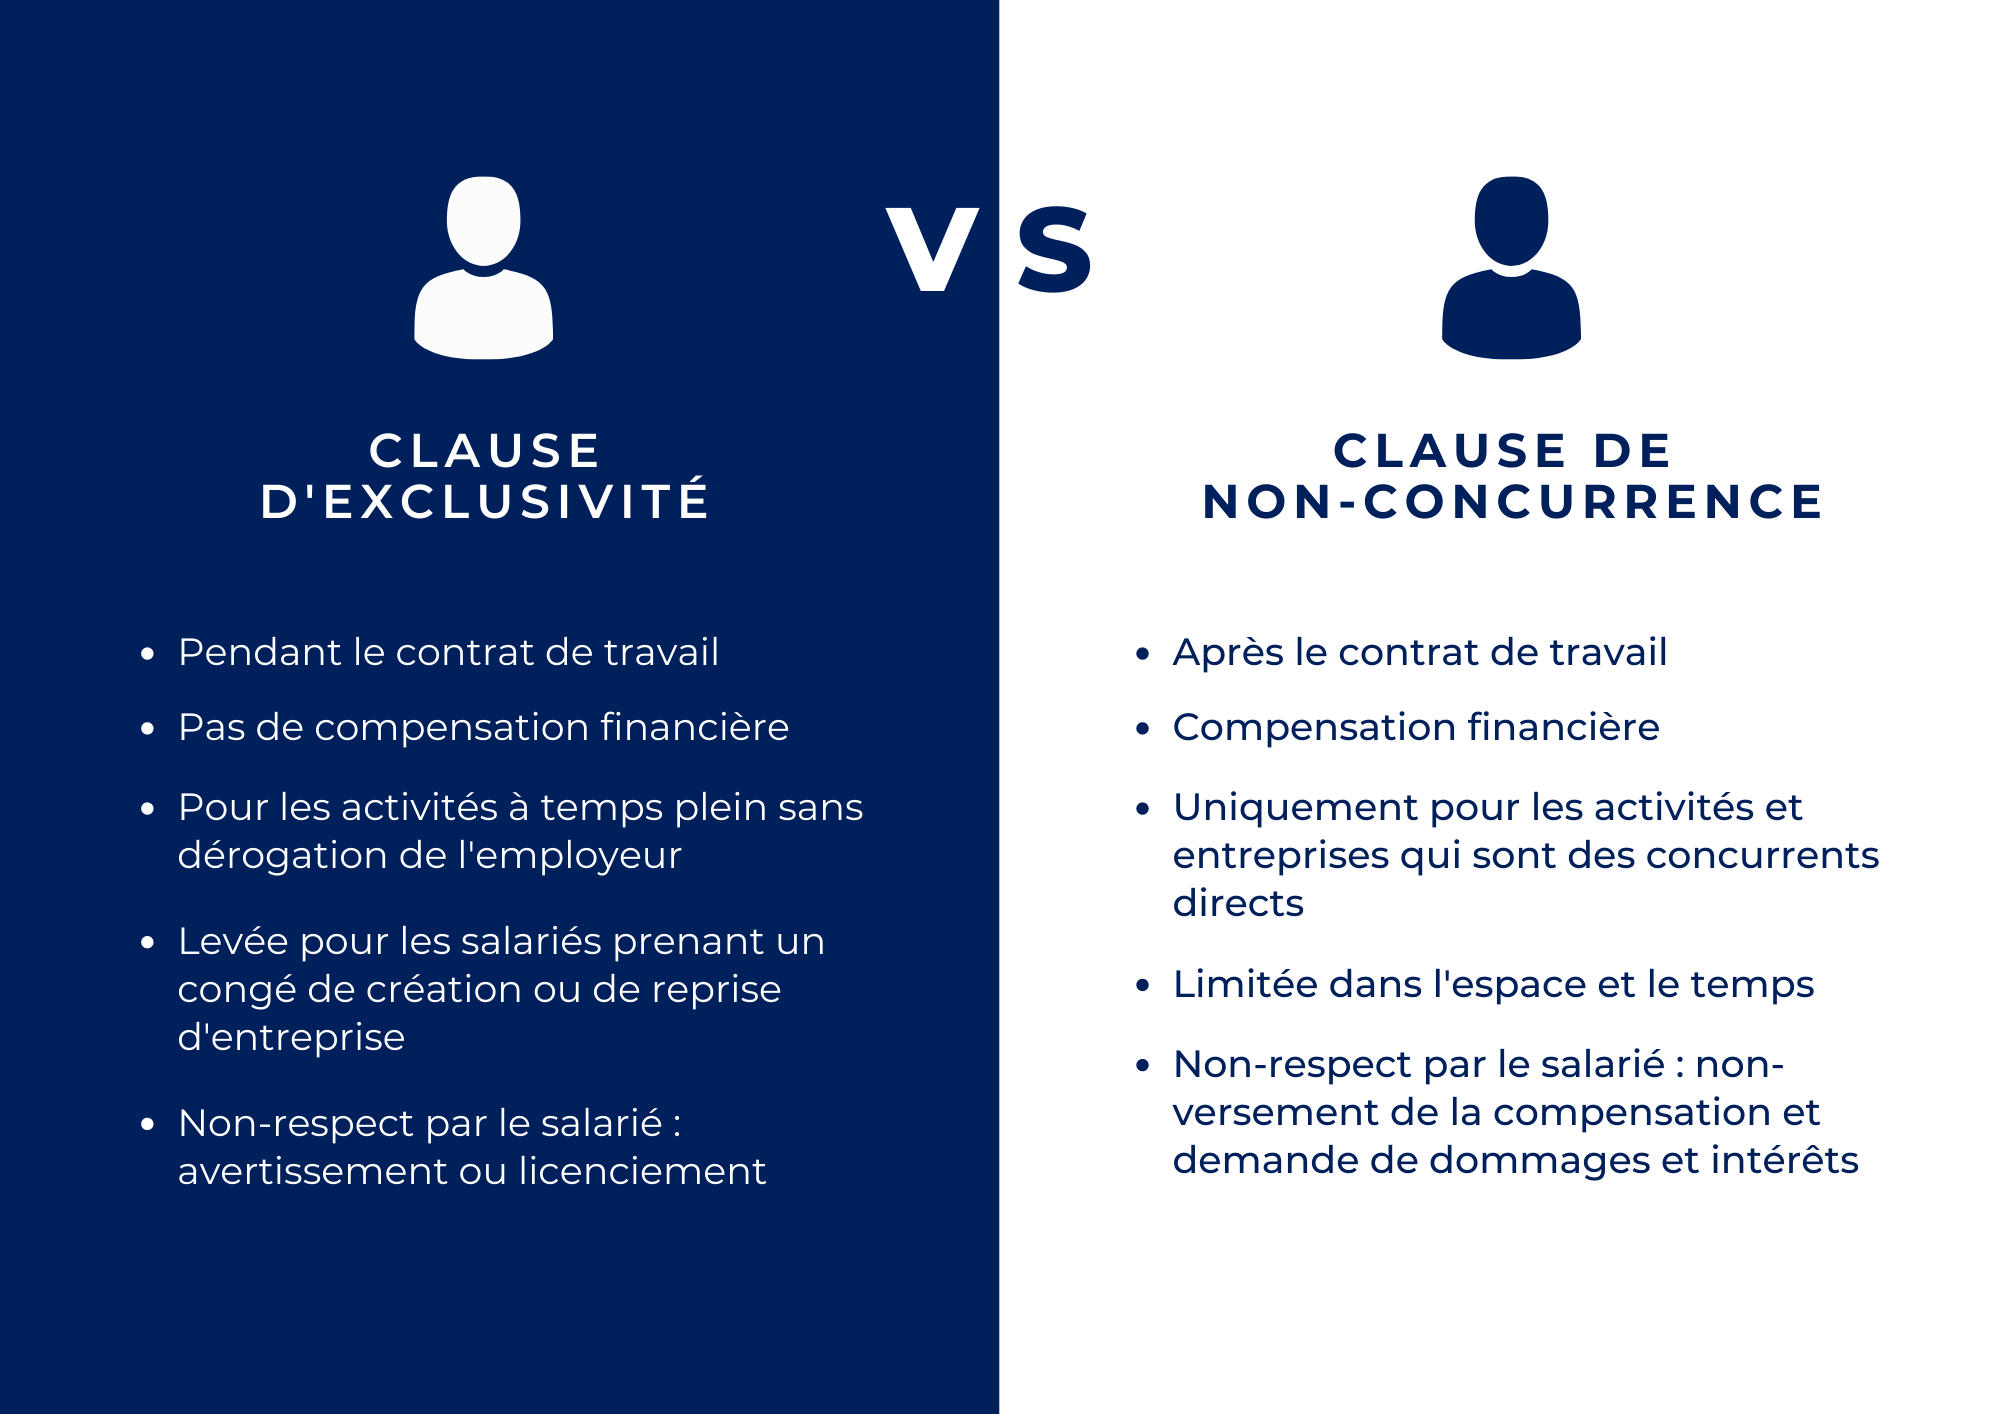 Les différences entre clause d'exclusivité et clause de non-concurrence